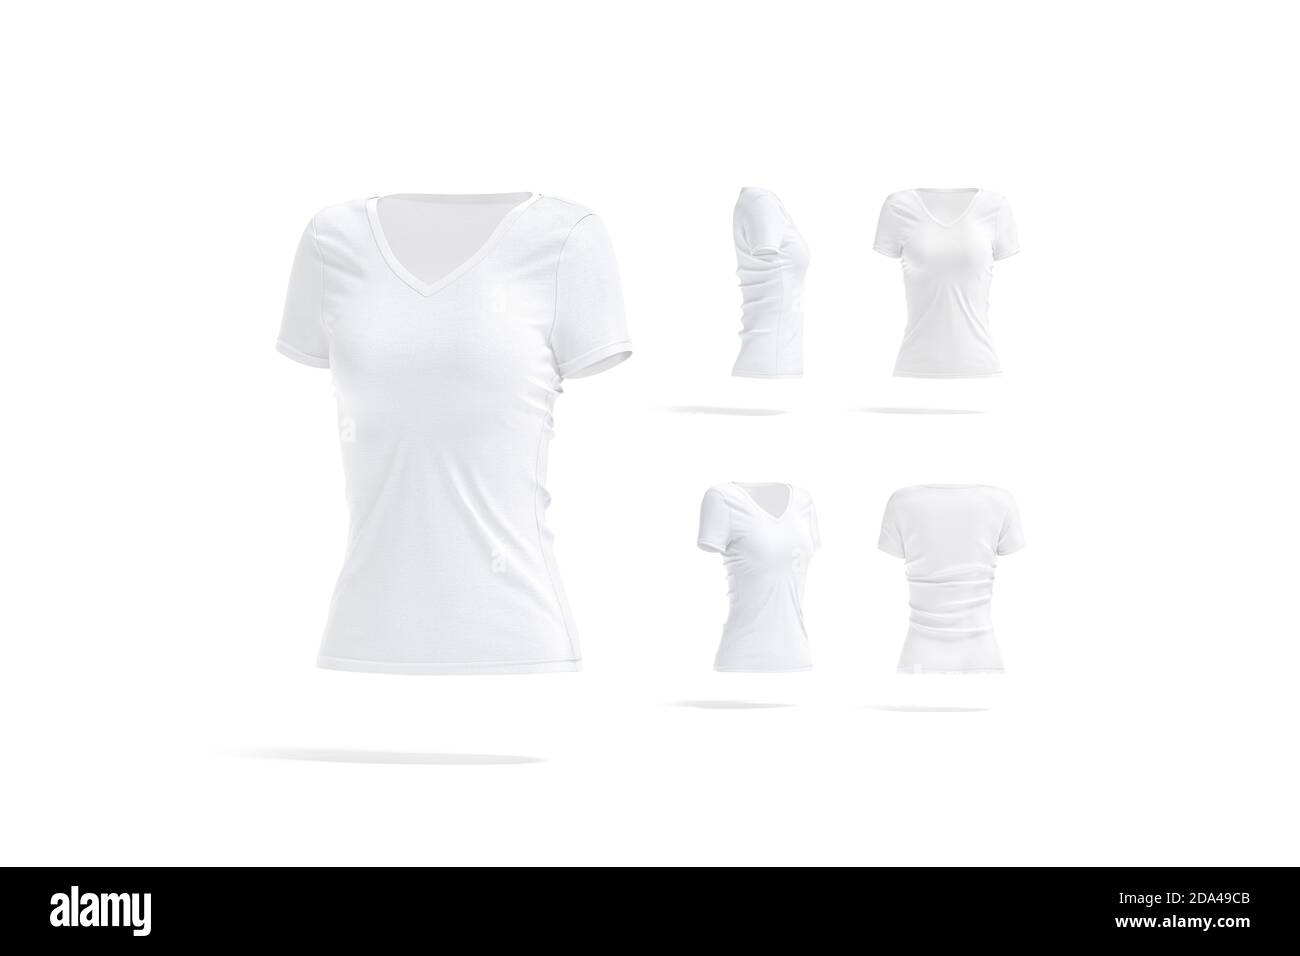 Blank weiß Frauen Slimfit T-Shirt Modell, verschiedene Ansichten Stockfoto